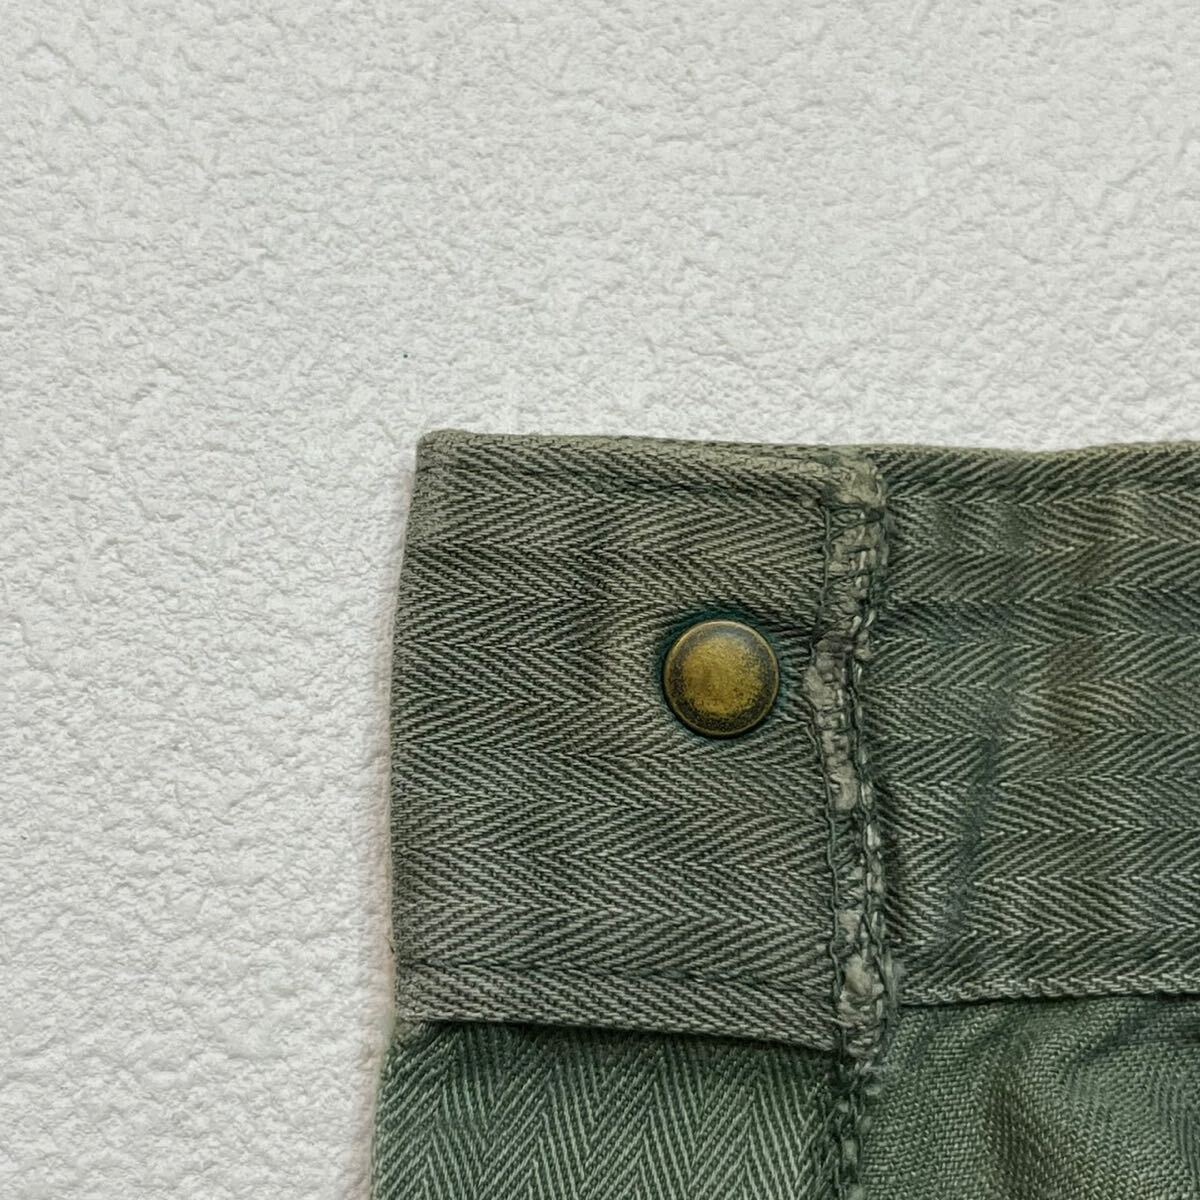 k304 40s ビンテージ U.S. MARINE CORPS HBT ヘリンボーン ツイル パンツ ドーナツ ボタン pants vintage カーキ オリーブ ミリタリー 海軍の画像9